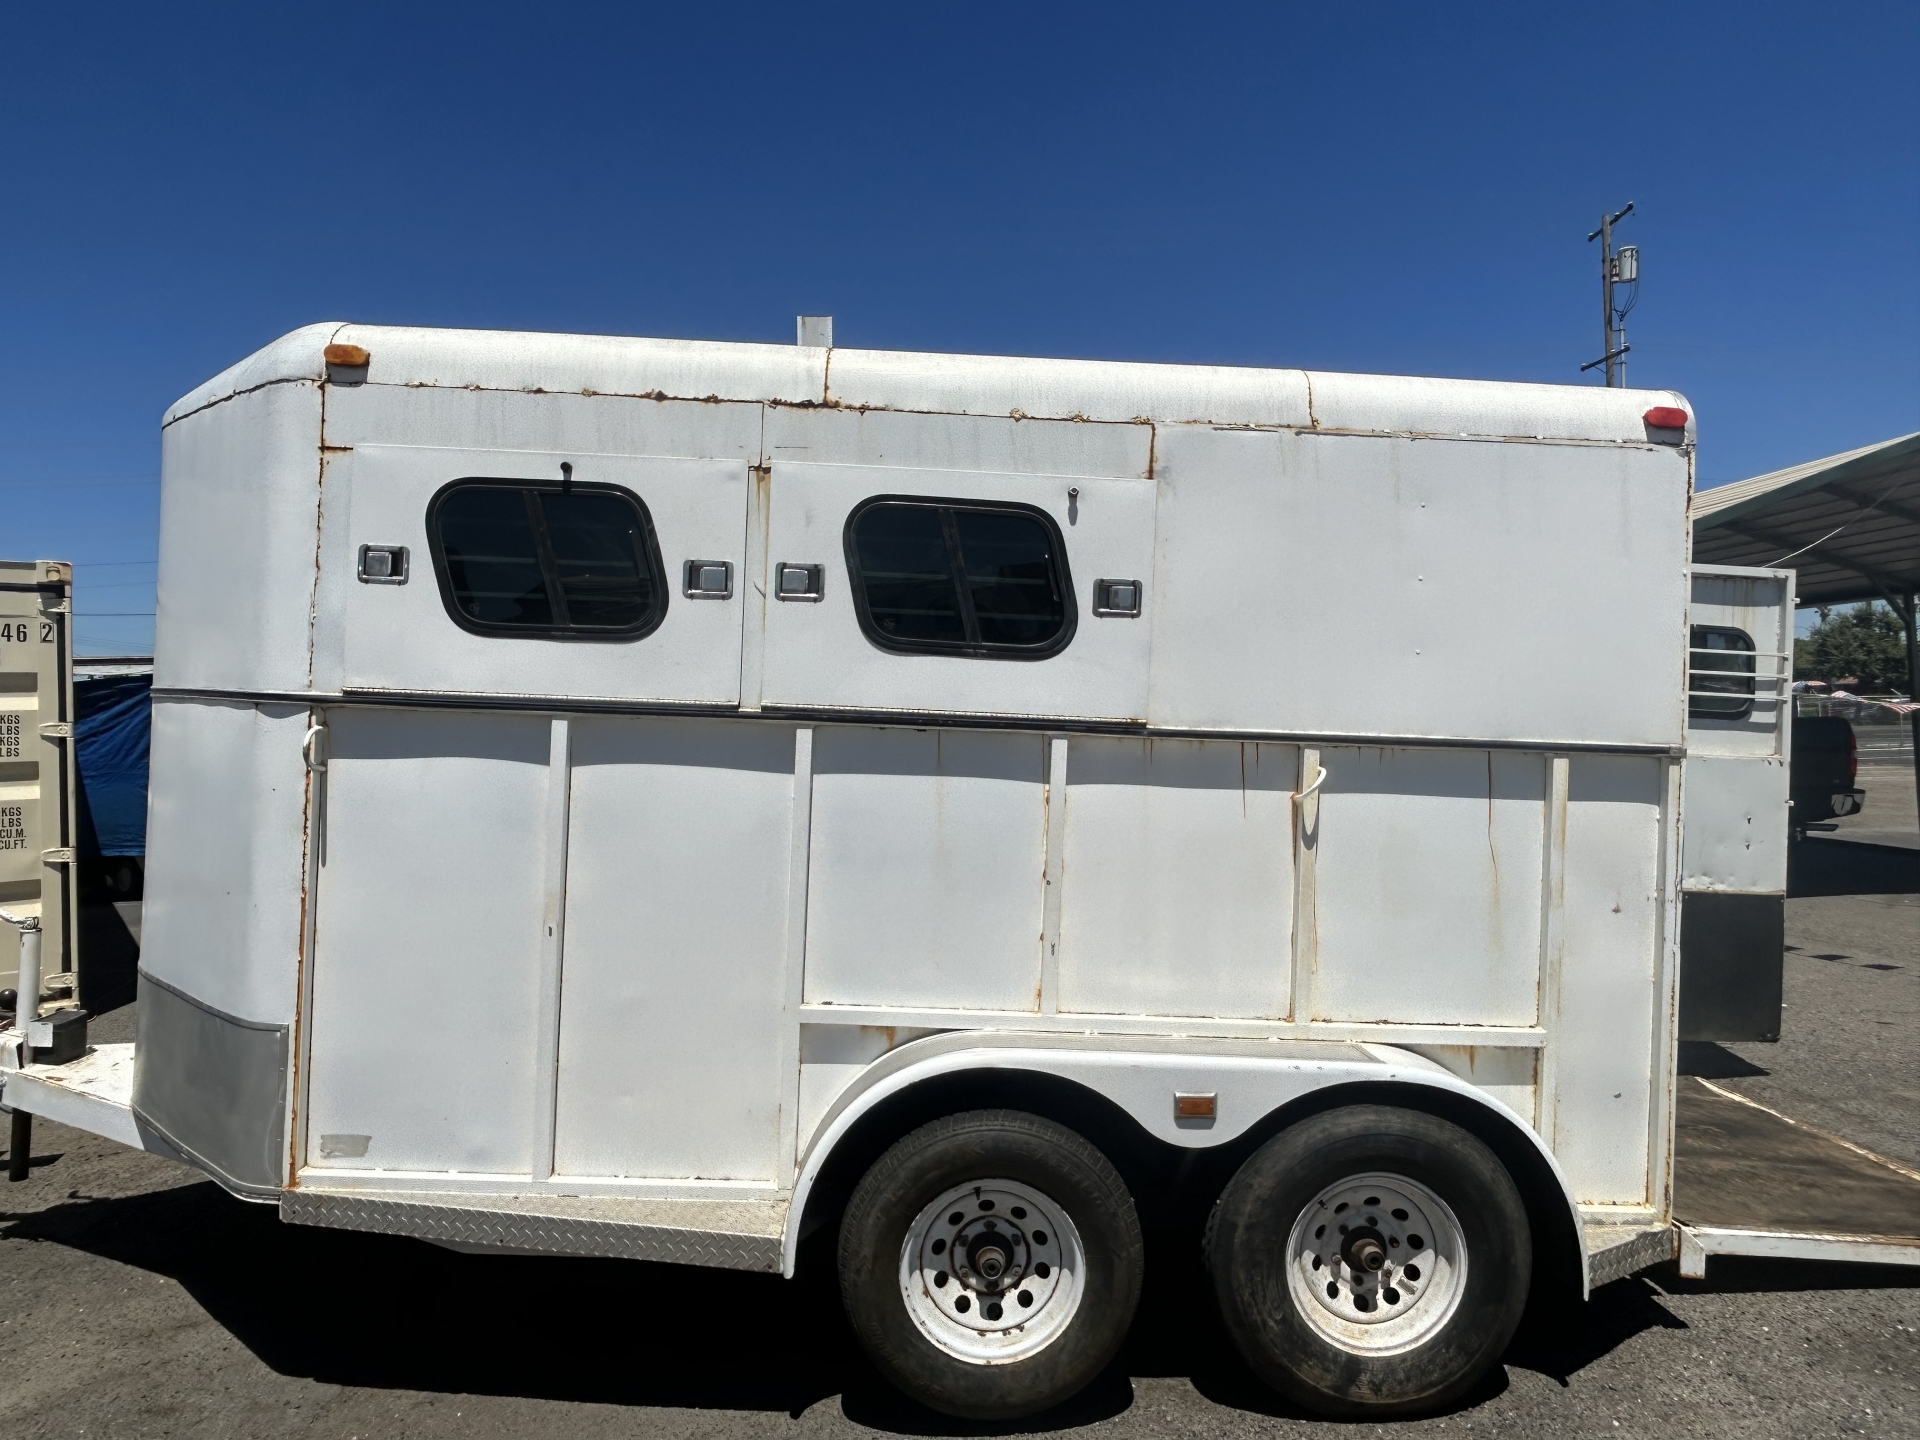 RV for sale: 1995 Two Horse Trailer Slant 25' in Lodi Stockton CA - Lodi  Park and Sell